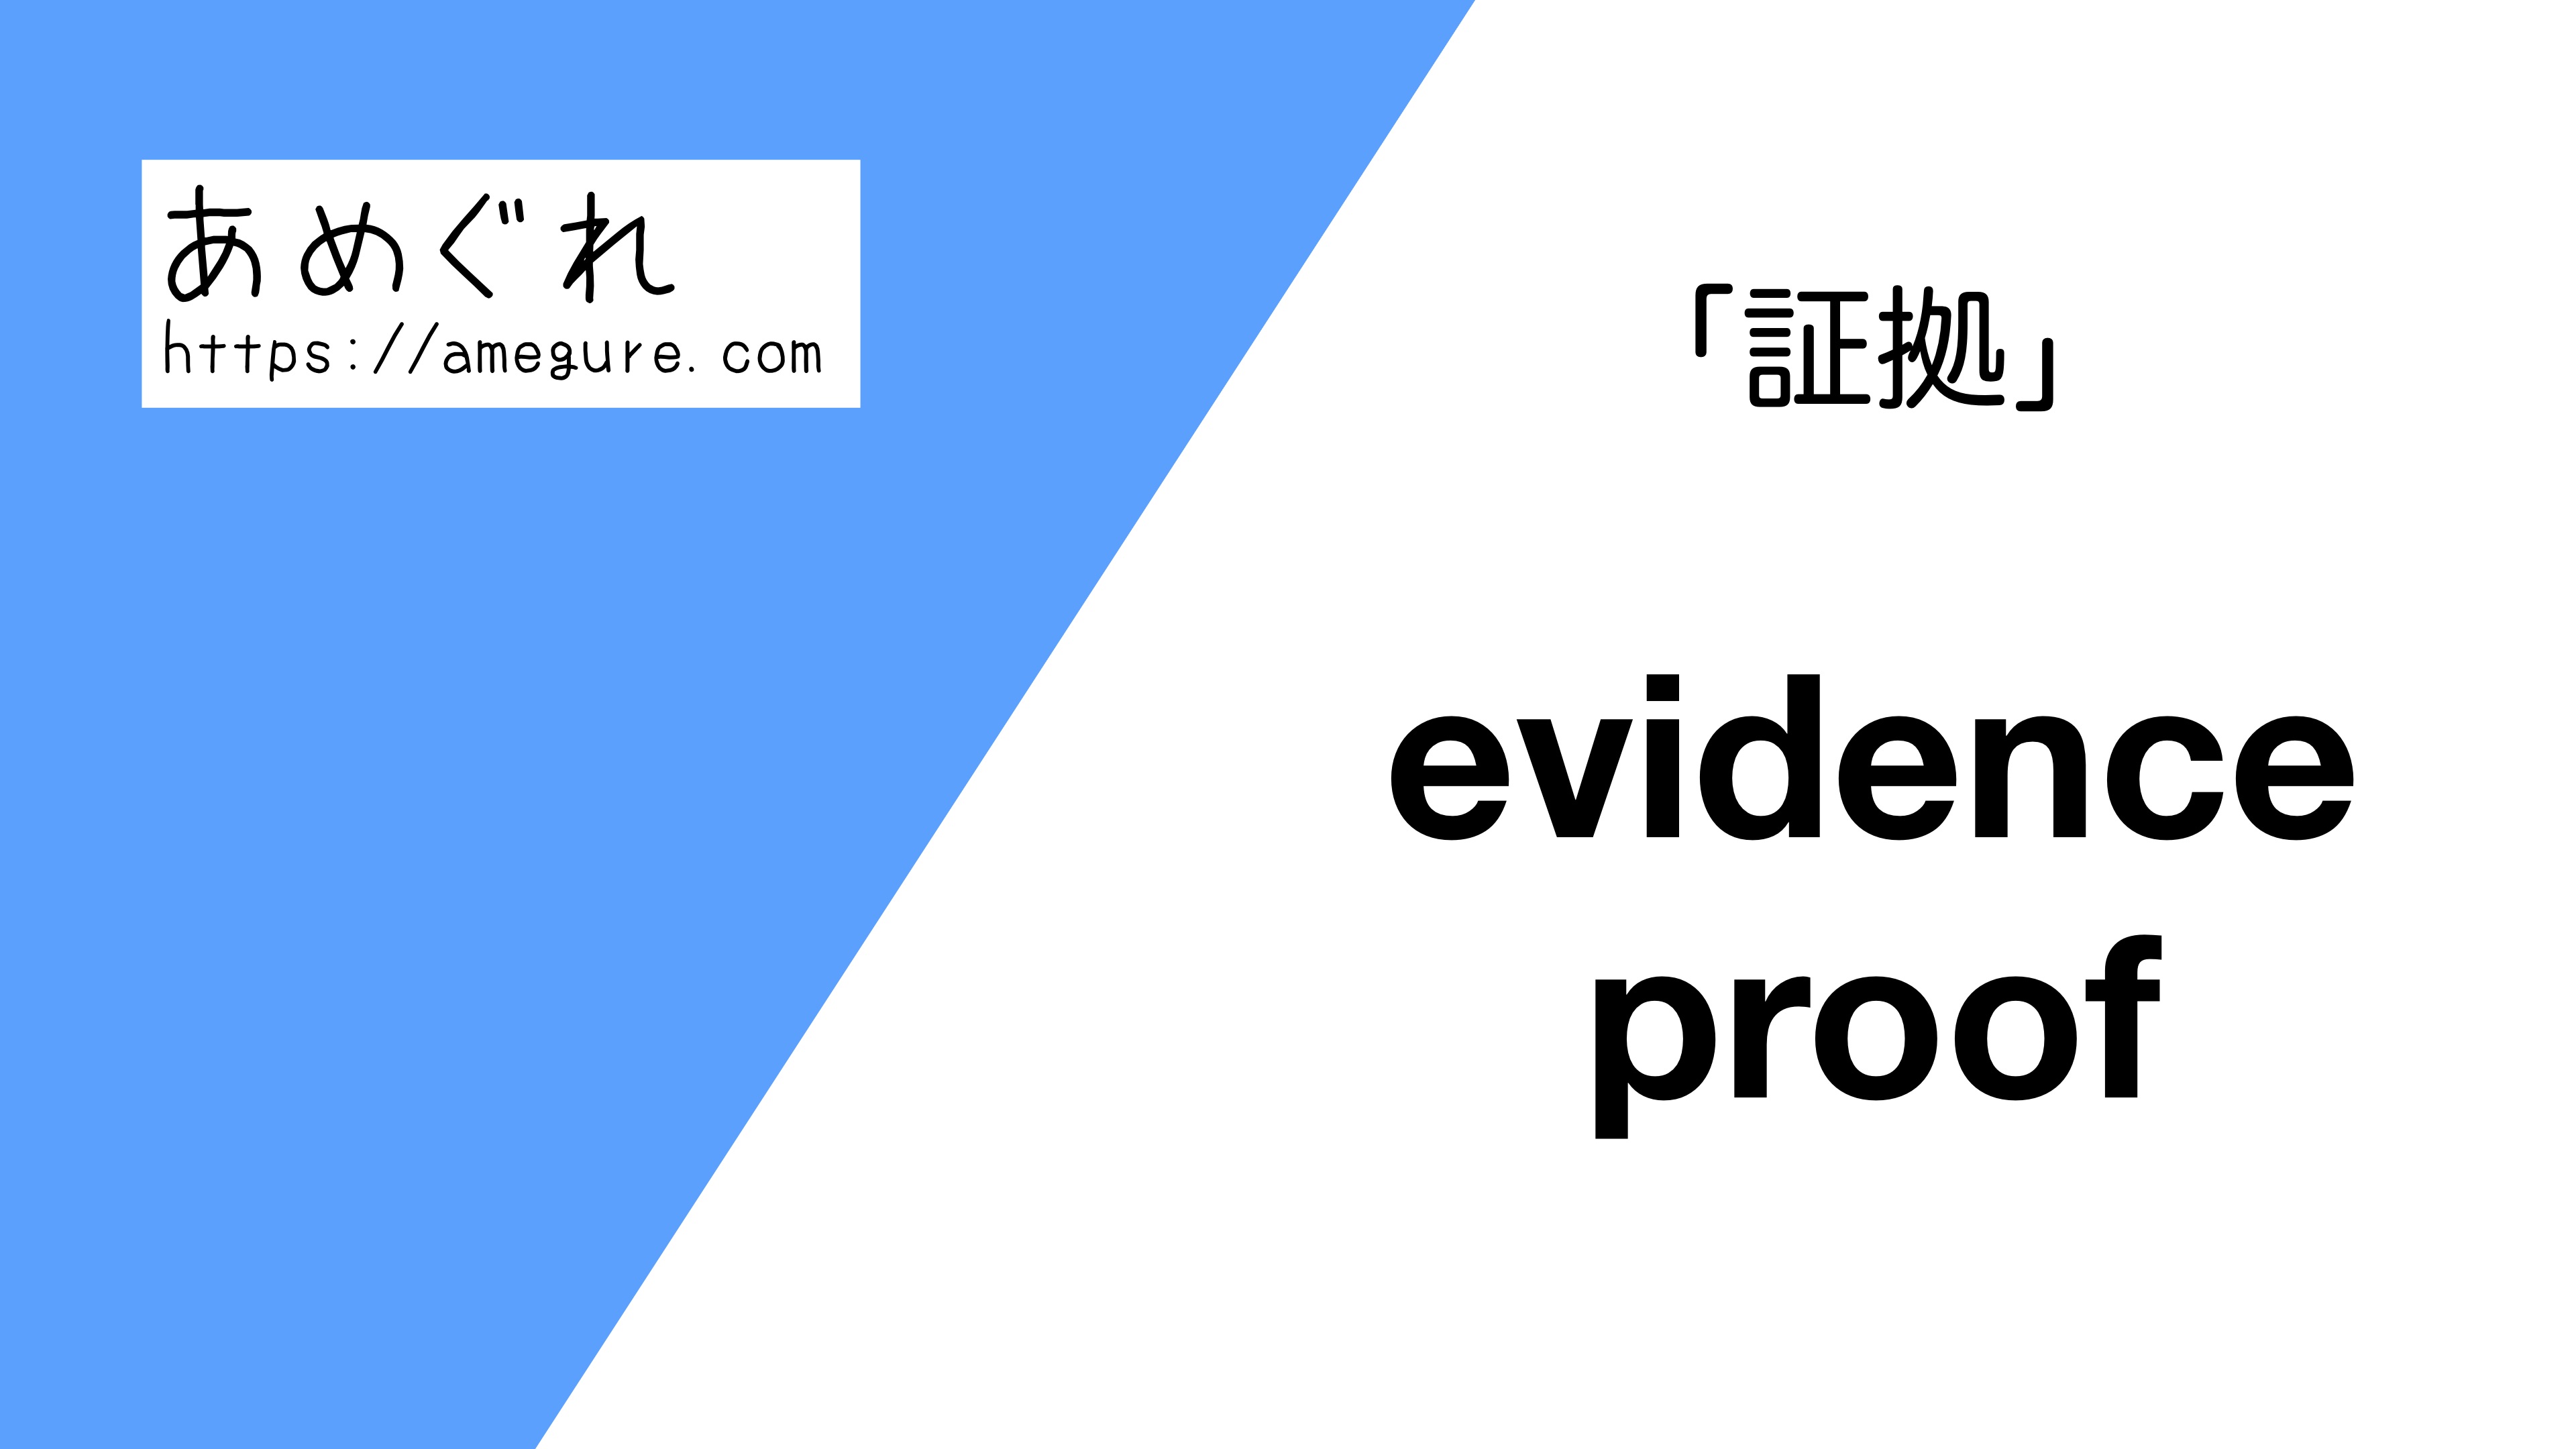 英語 Evidence Proof 証拠 の意味の違いと使い分け